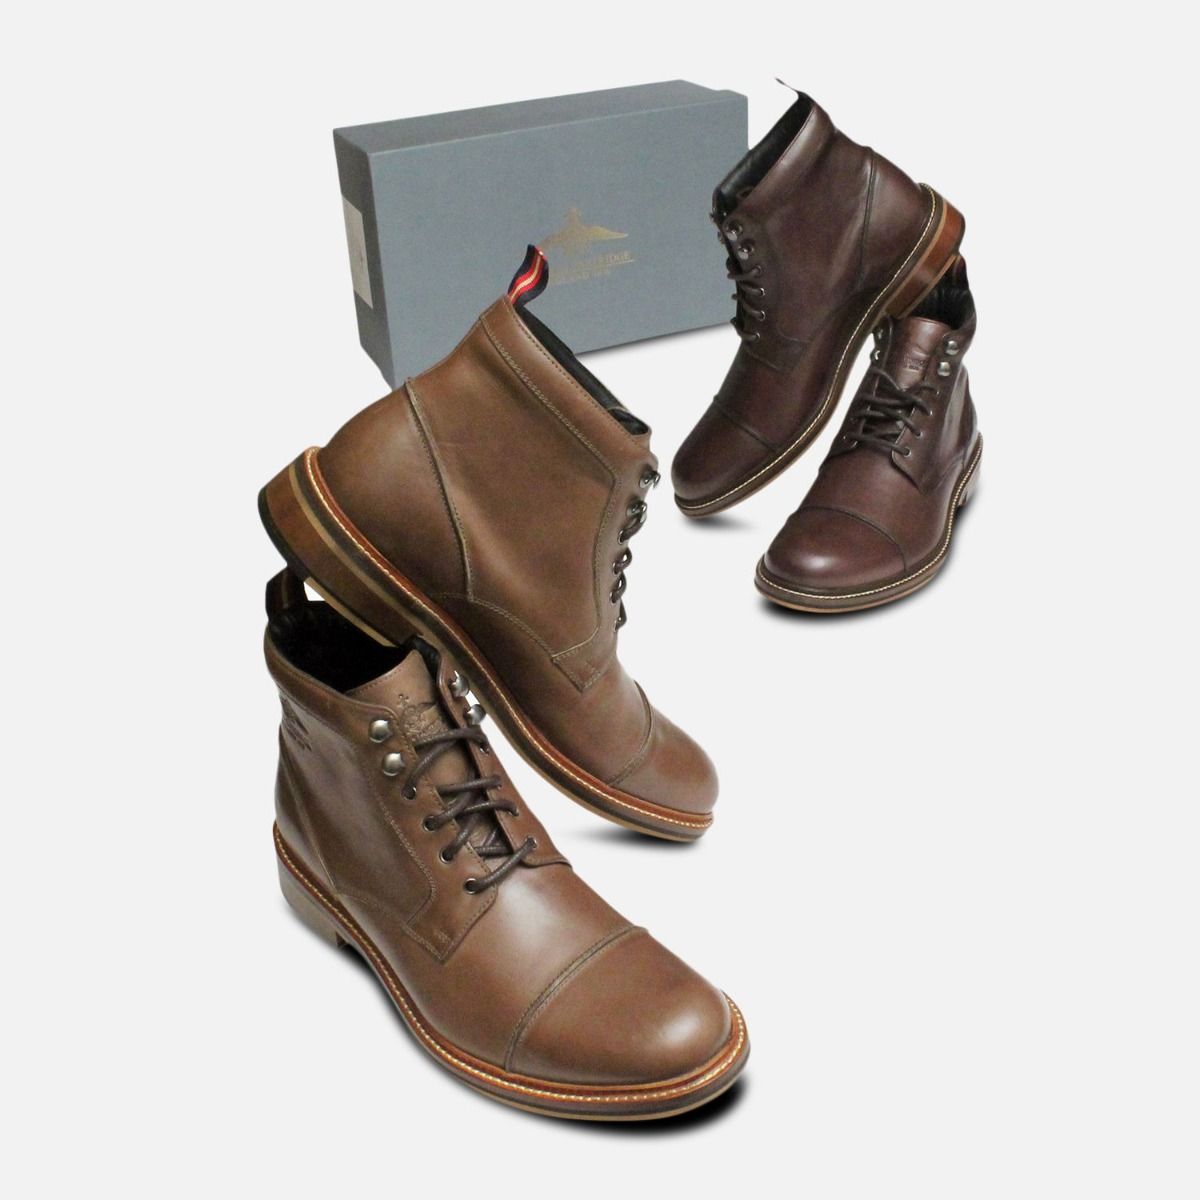 khaki shoe boots